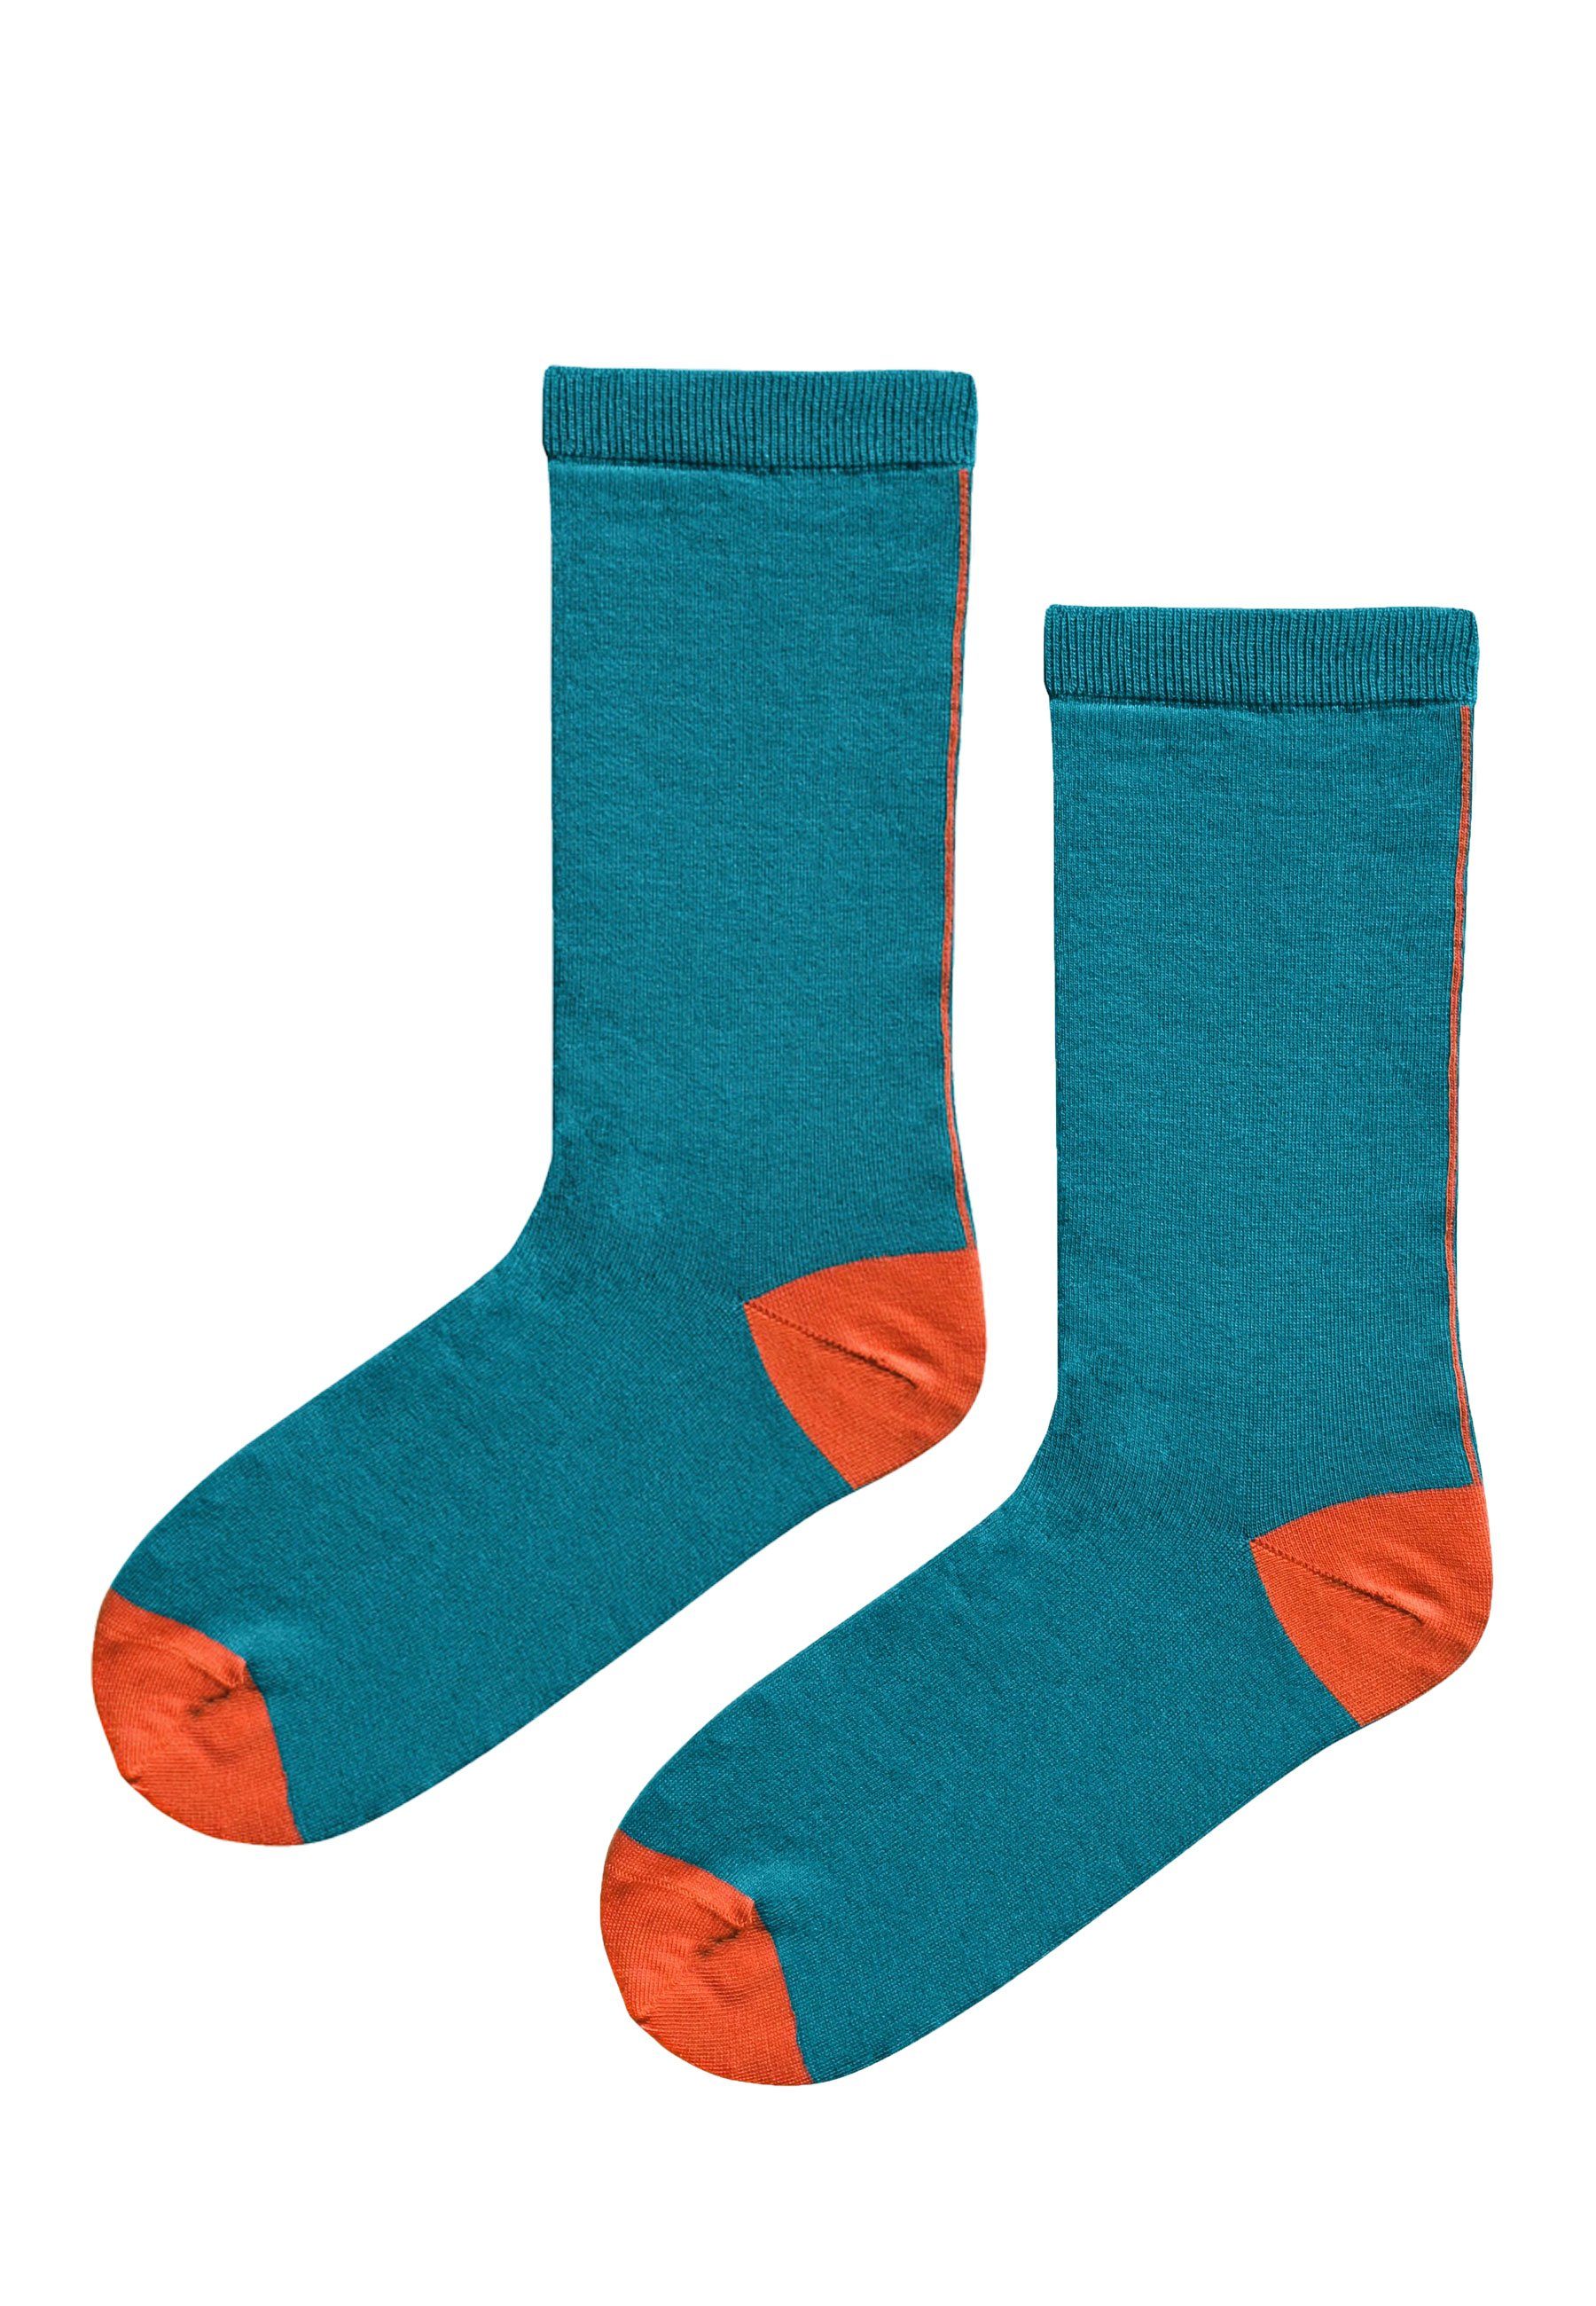 Elkline Socken Schönefüsschen Socken coral blue - Schönefüsschen zweifarbig mandarin